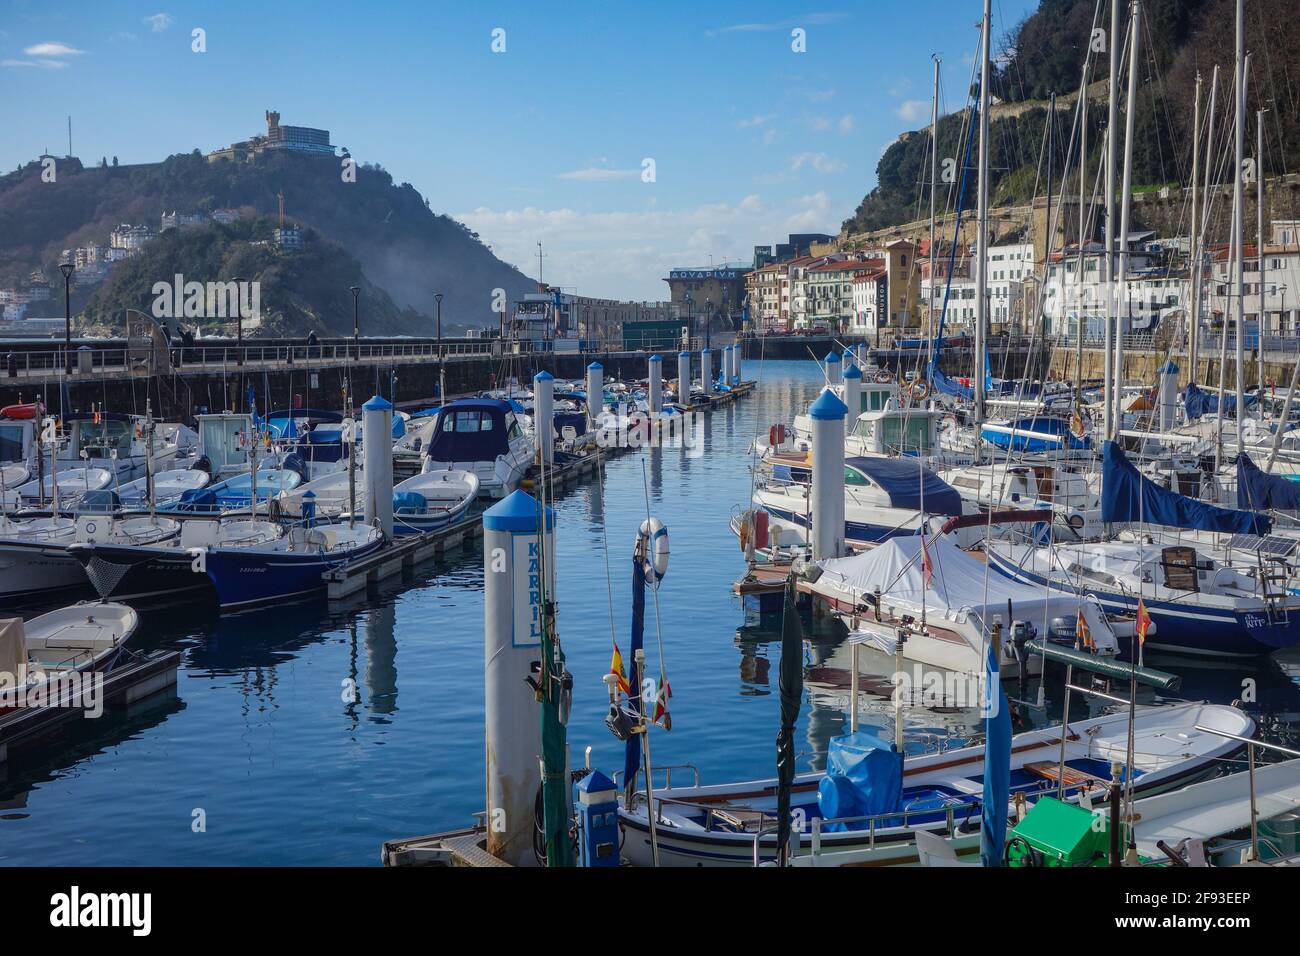 San Sebastian, Espagne - 2 avril 2021 : bateaux dans le port de plaisance de la baie de la Concha au pied du mont Urgull Banque D'Images